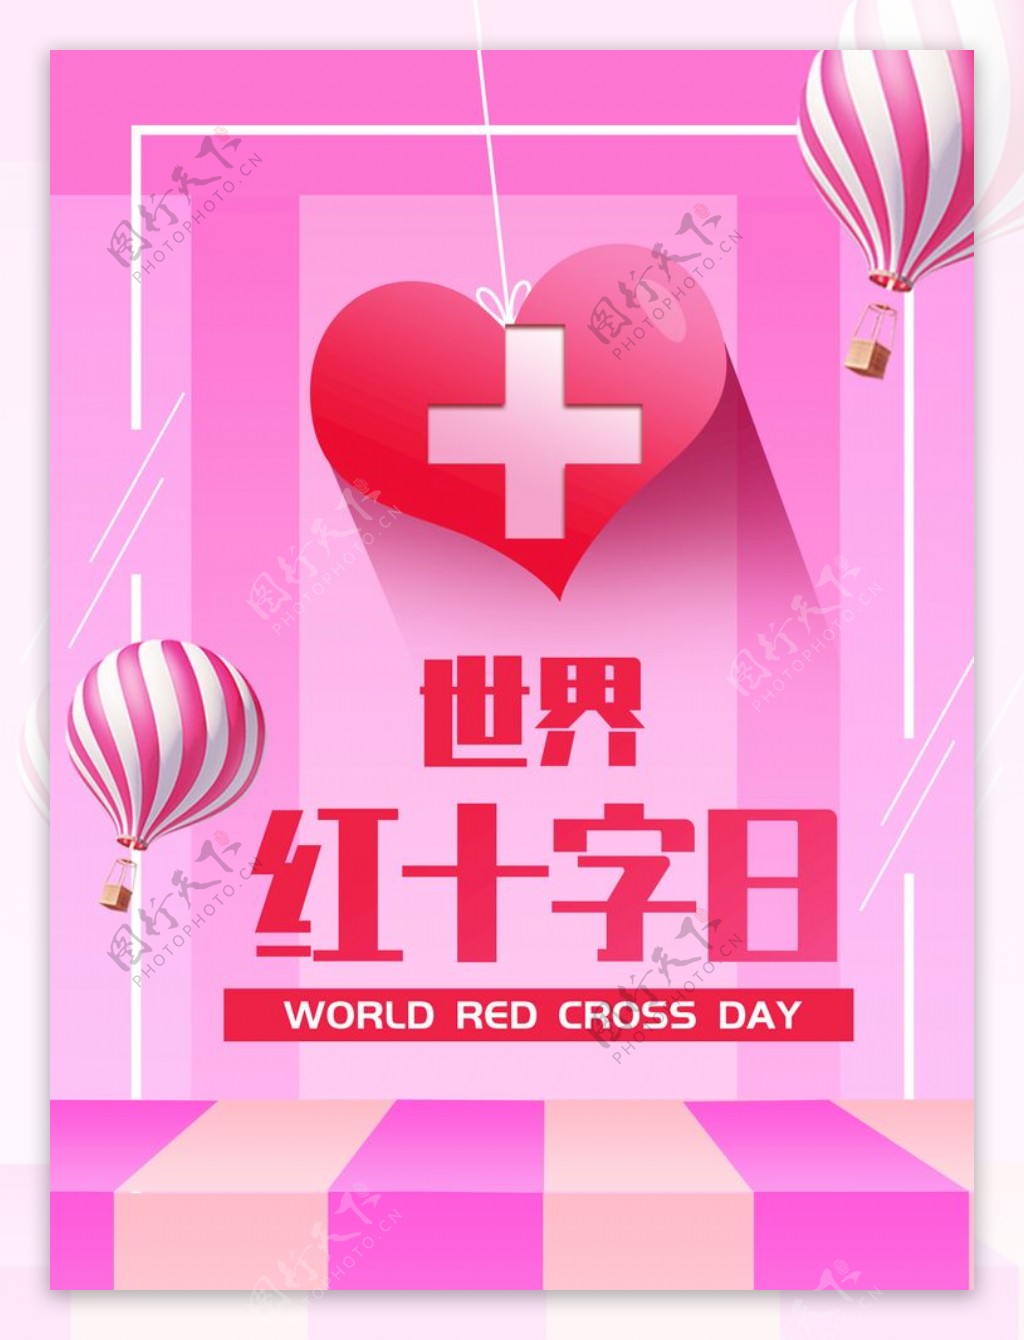 清新世界红十字日宣传节日